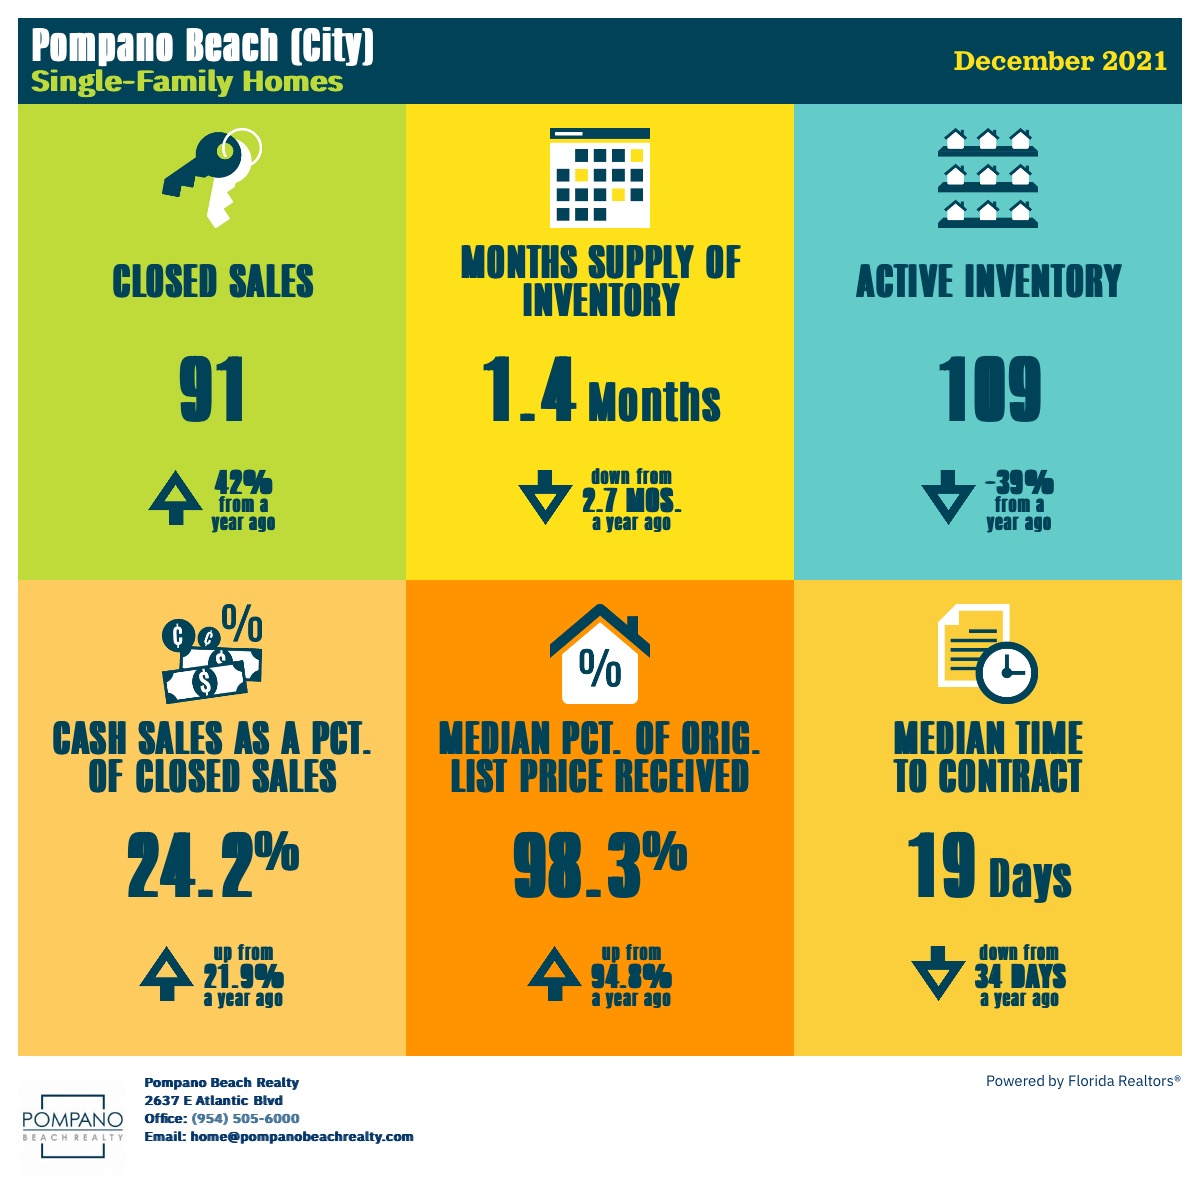 Single Family Home Sales in Pompano Beach in December 2021